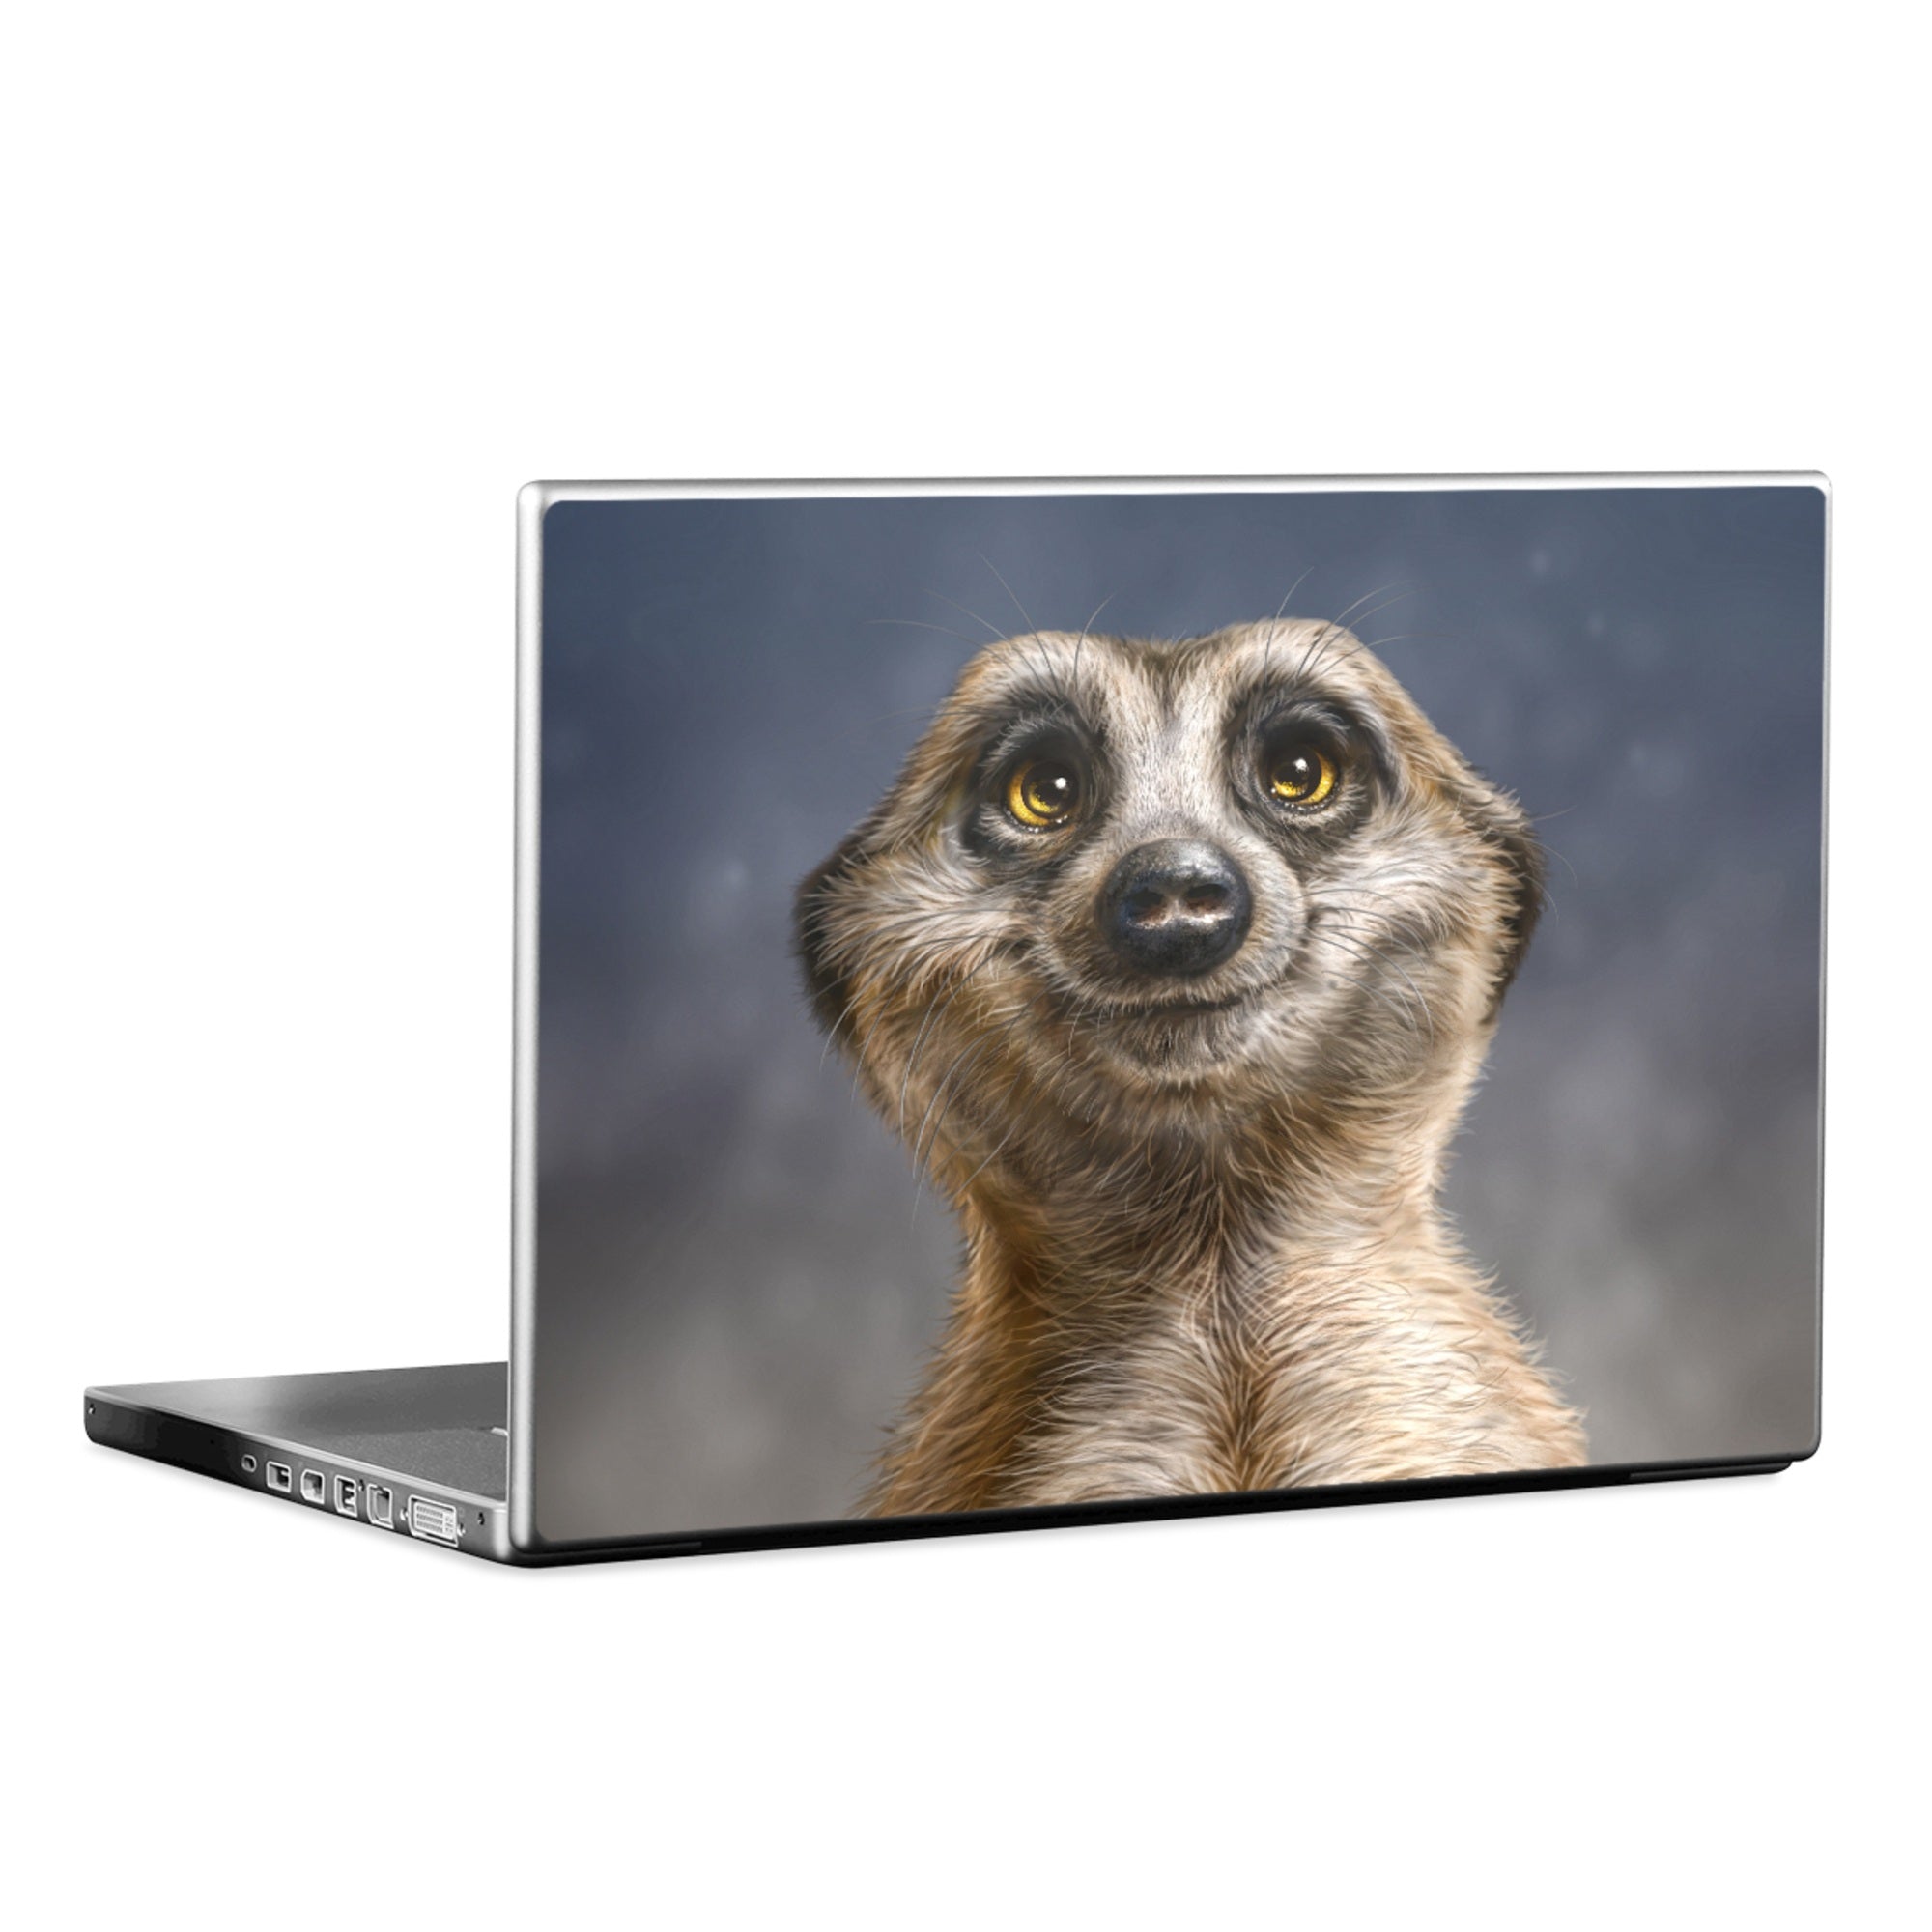 Meerkat - Laptop Lid Skin